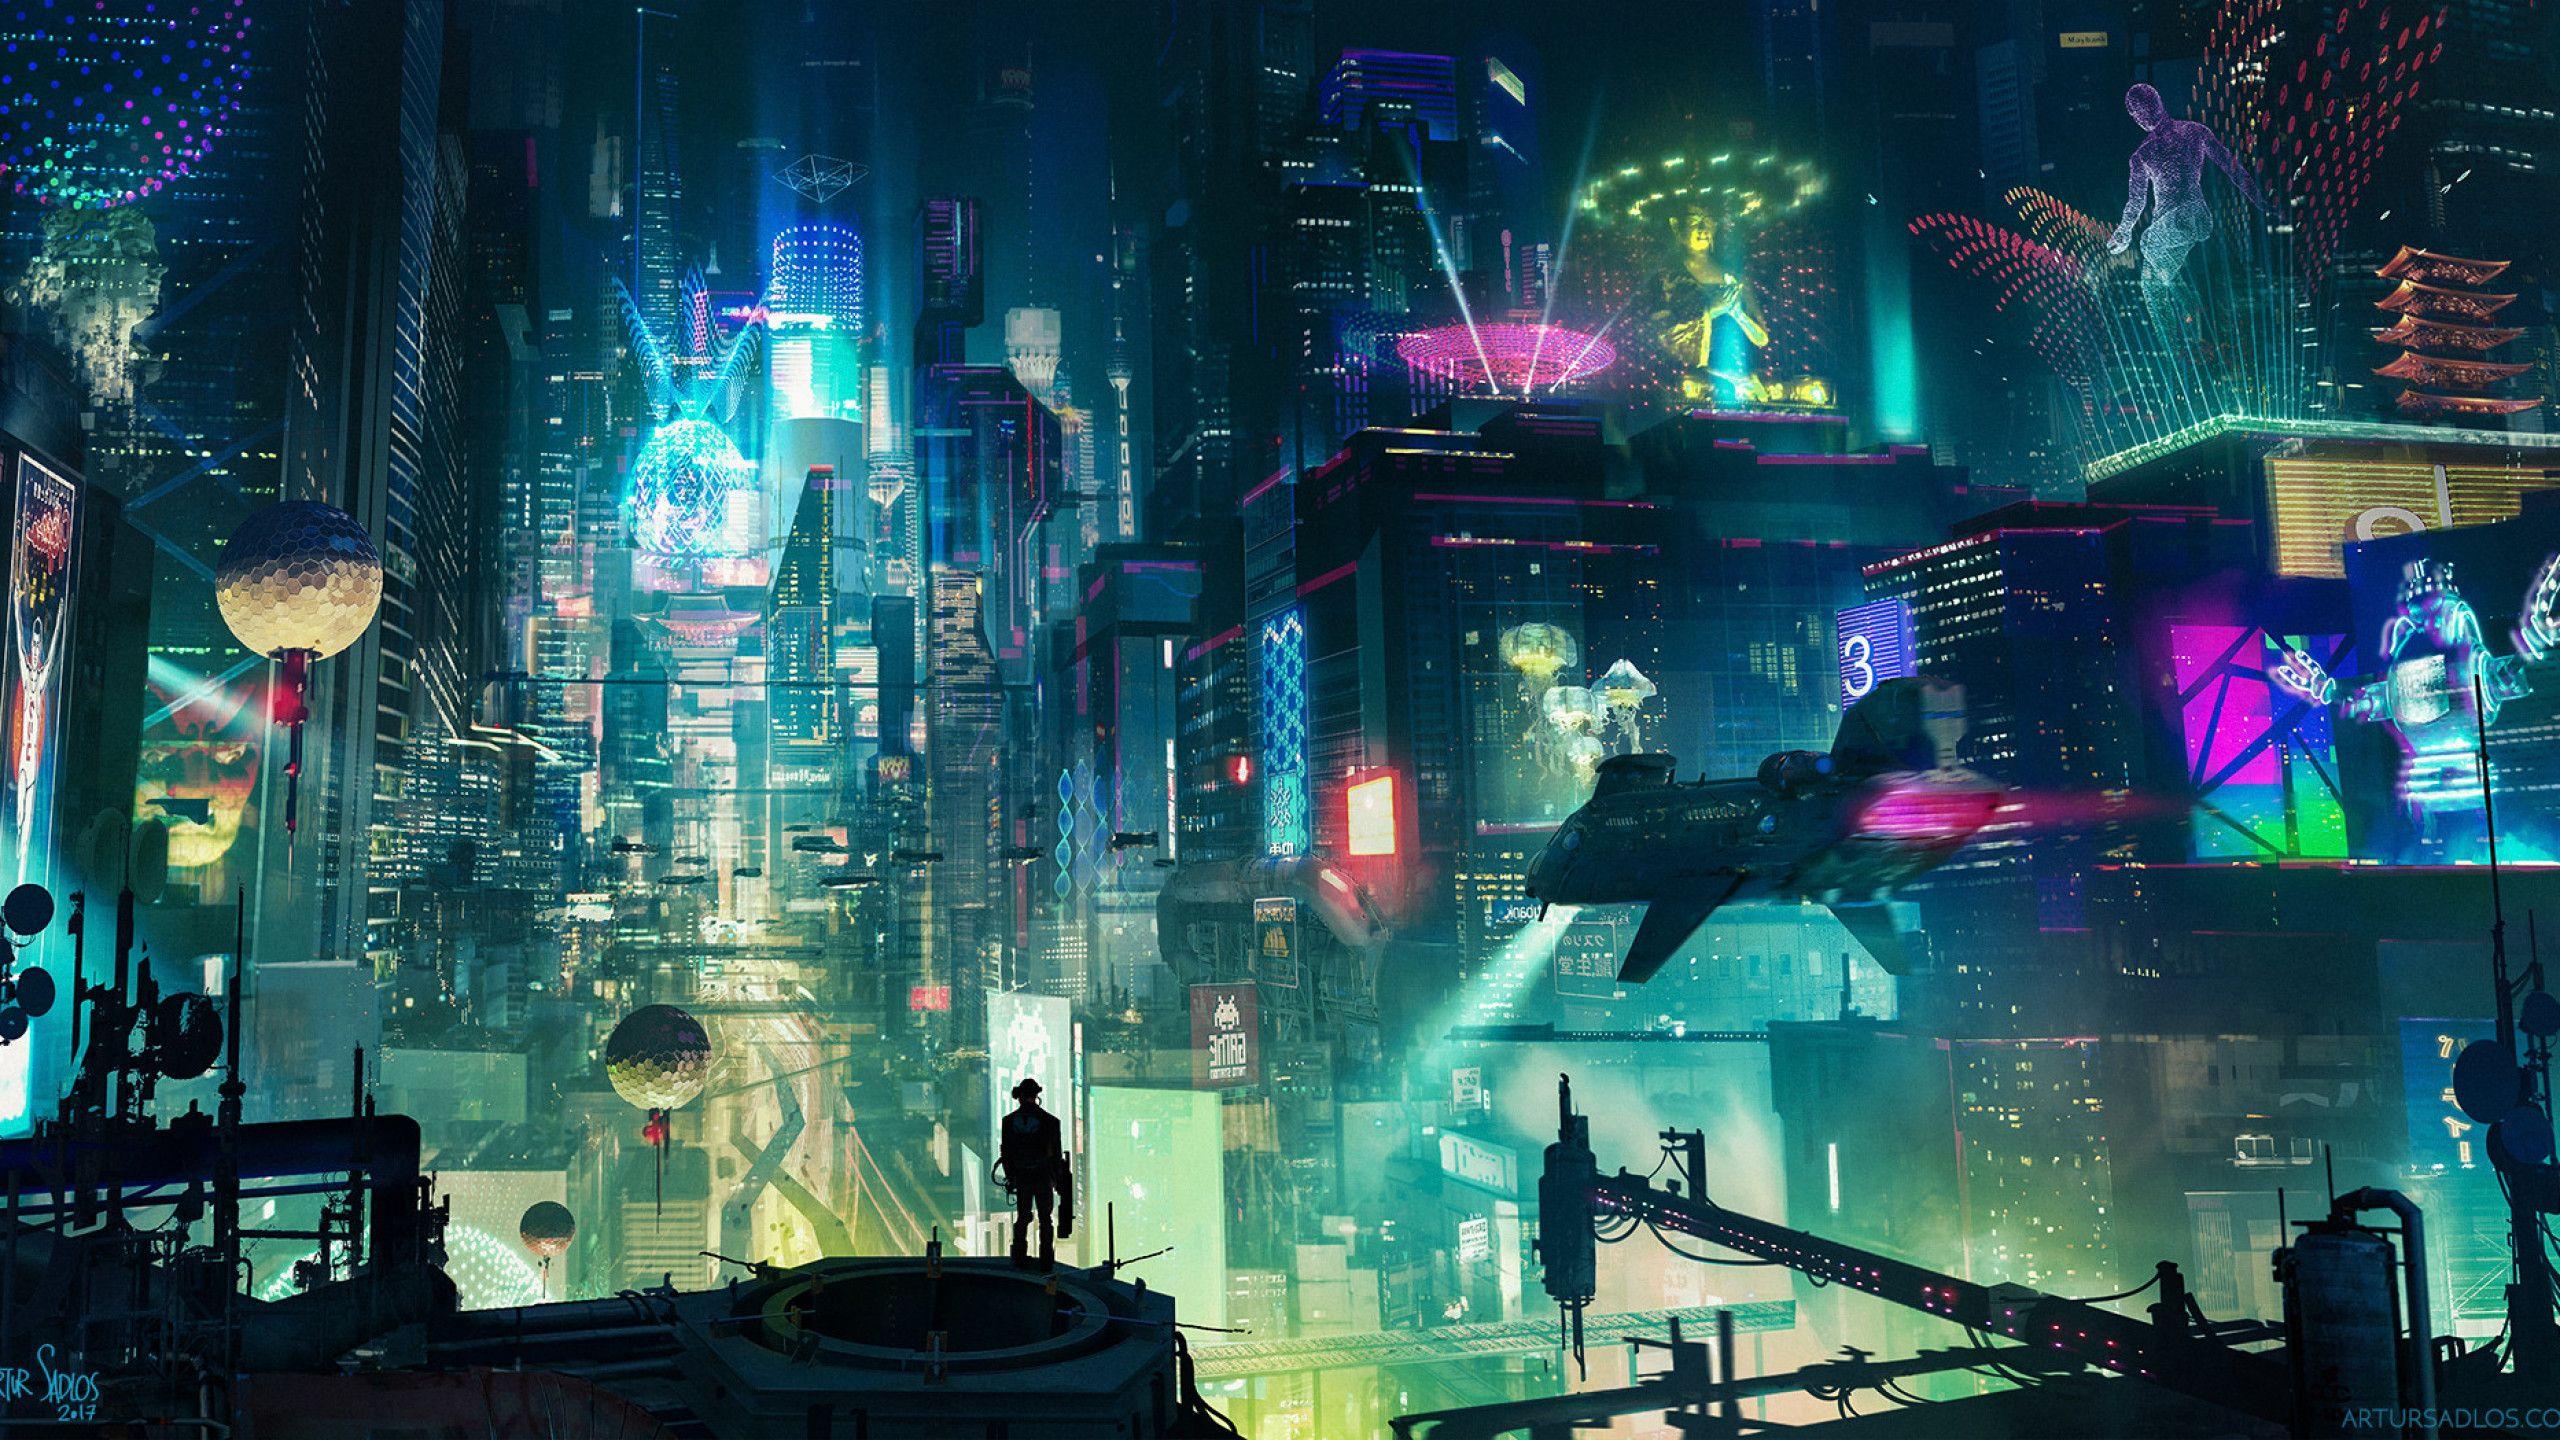 Cyberpunk 2077 Wallpapers - Top 65 Best Cyberpunk 2077 Backgrounds